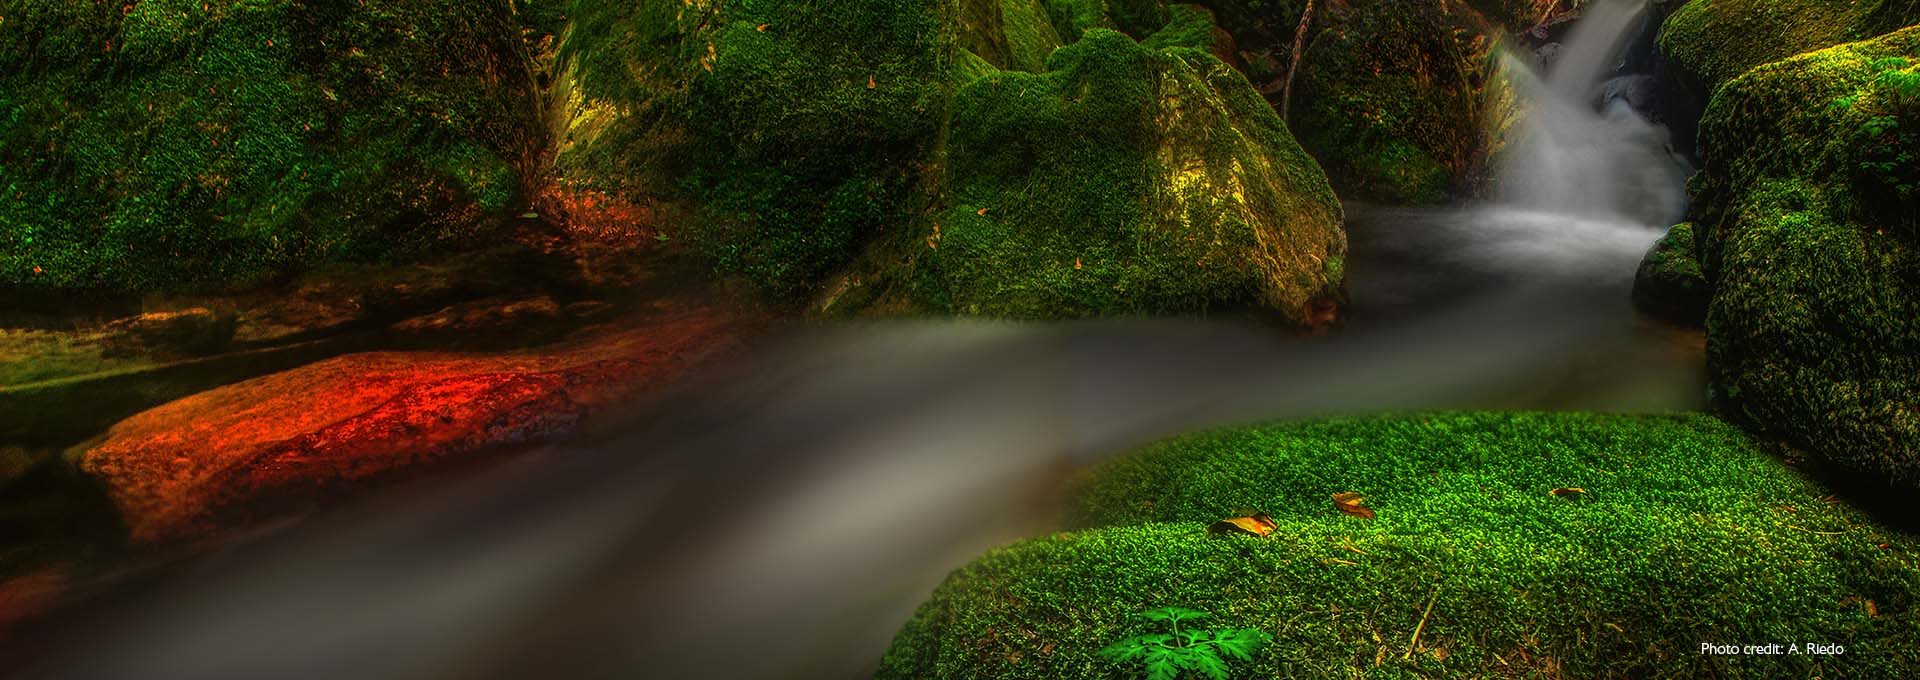 Image d'un petit ruisseau entre des rochers couverts de mousse et d'un vert vif, photographiée par des utilisateurs d'aides auditives Bernafon Alpha.